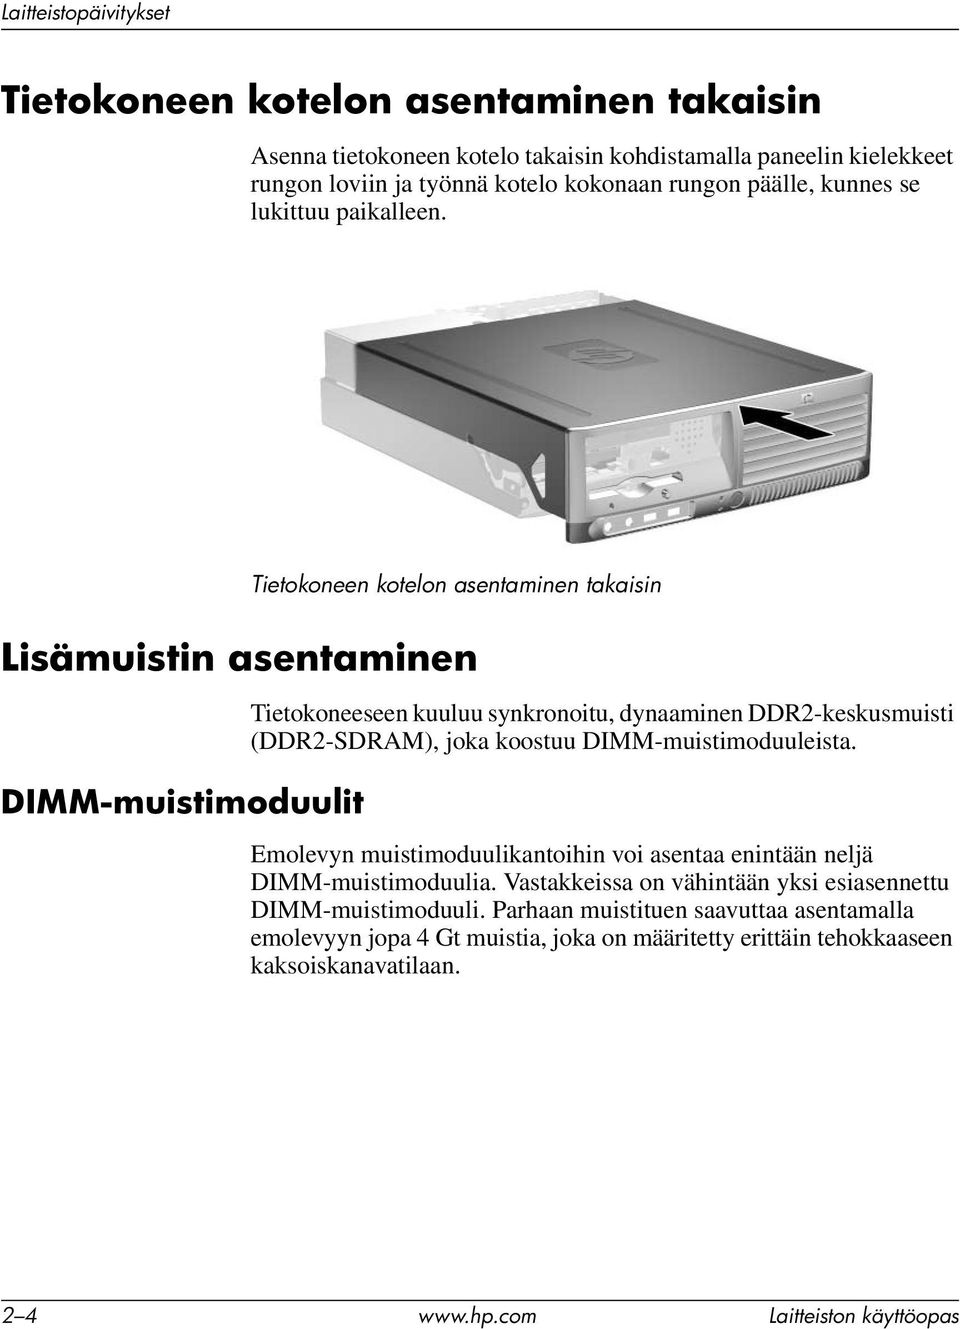 Tietokoneen kotelon asentaminen takaisin Lisämuistin asentaminen DIMM-muistimoduulit Tietokoneeseen kuuluu synkronoitu, dynaaminen DDR2-keskusmuisti (DDR2-SDRAM), joka koostuu